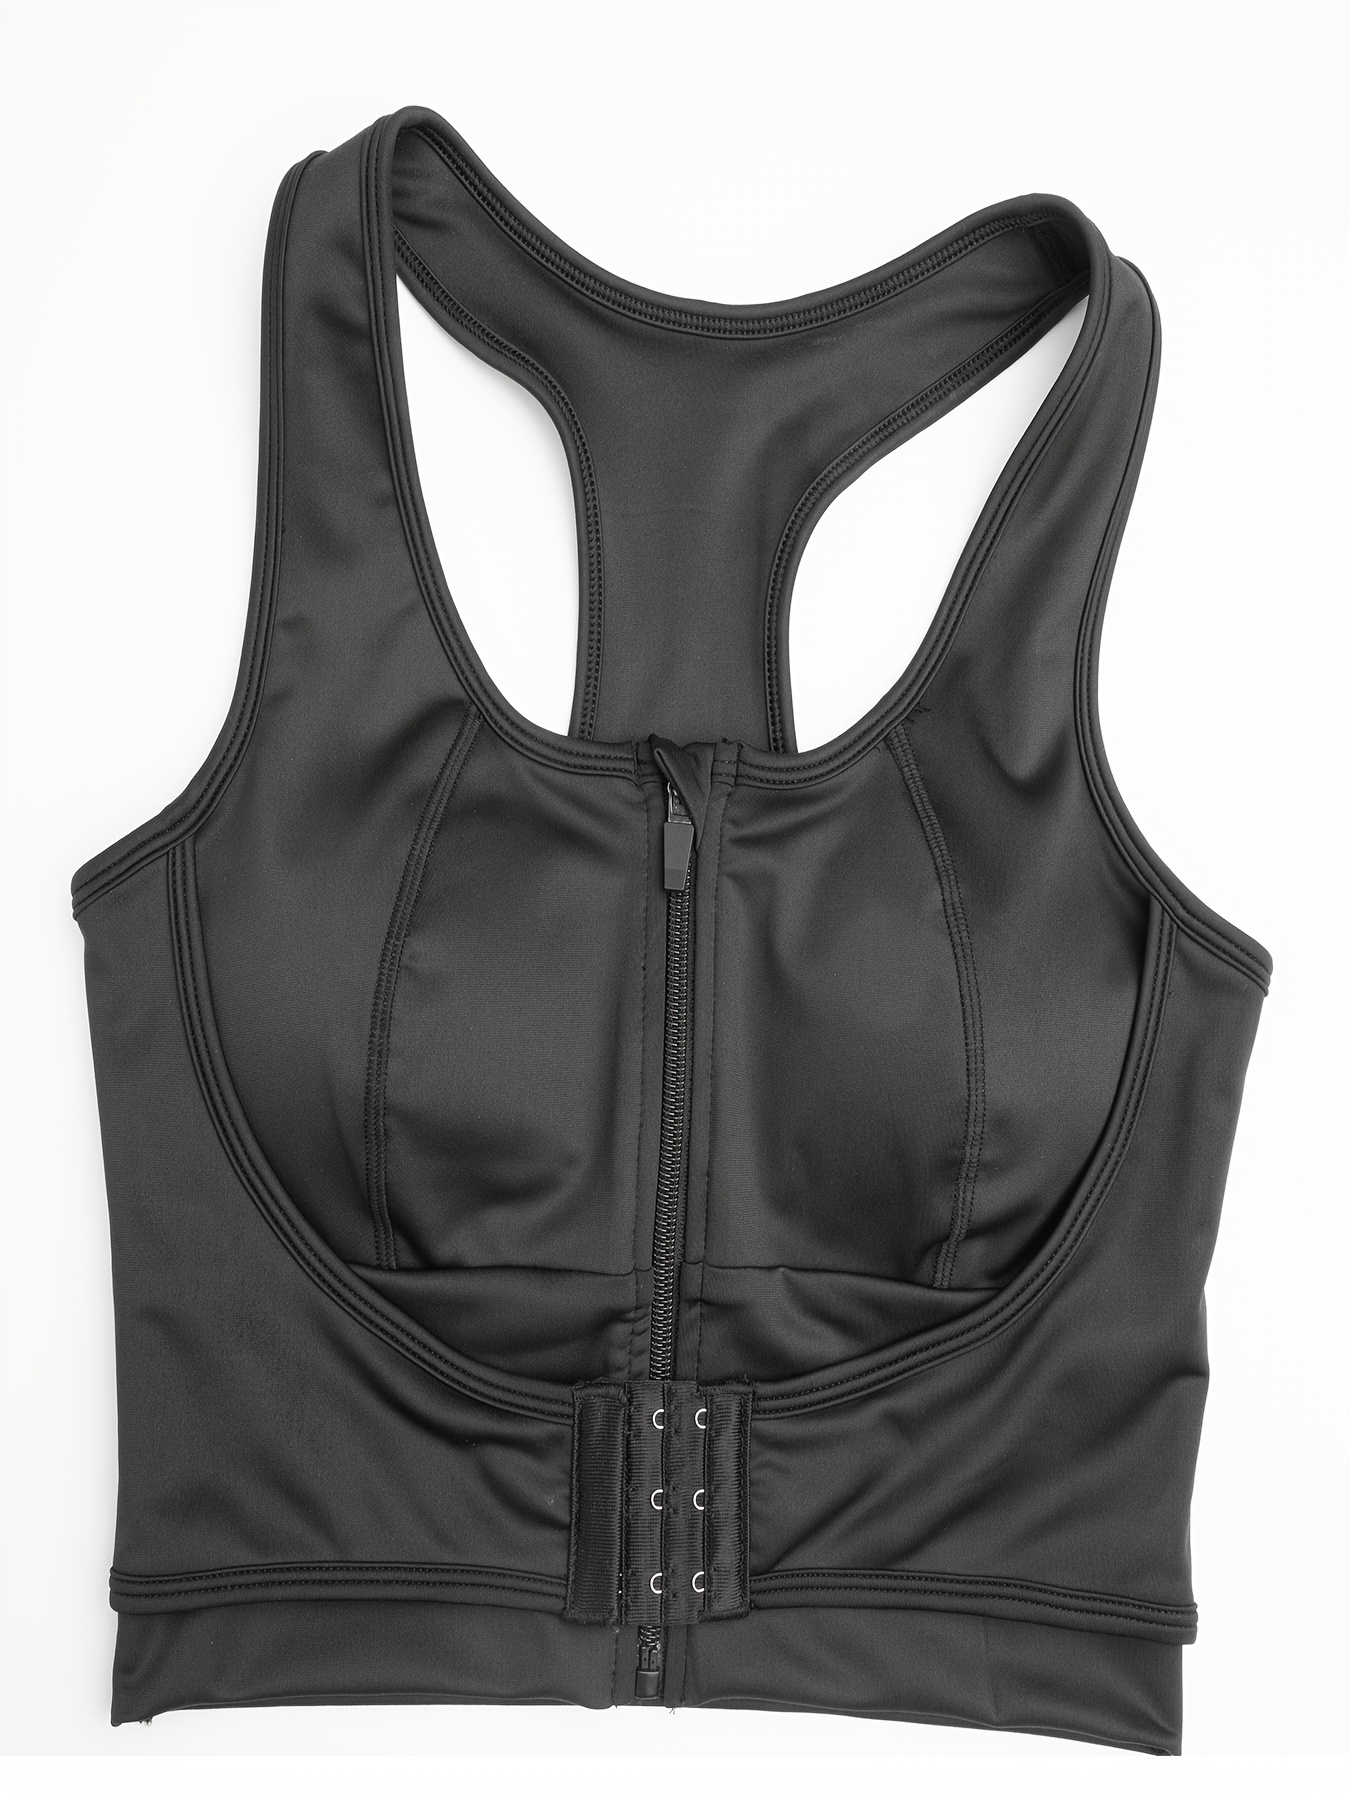 Elbourn Women's Zip Solid Sports Bra Front Zip Stretch Fitness Top